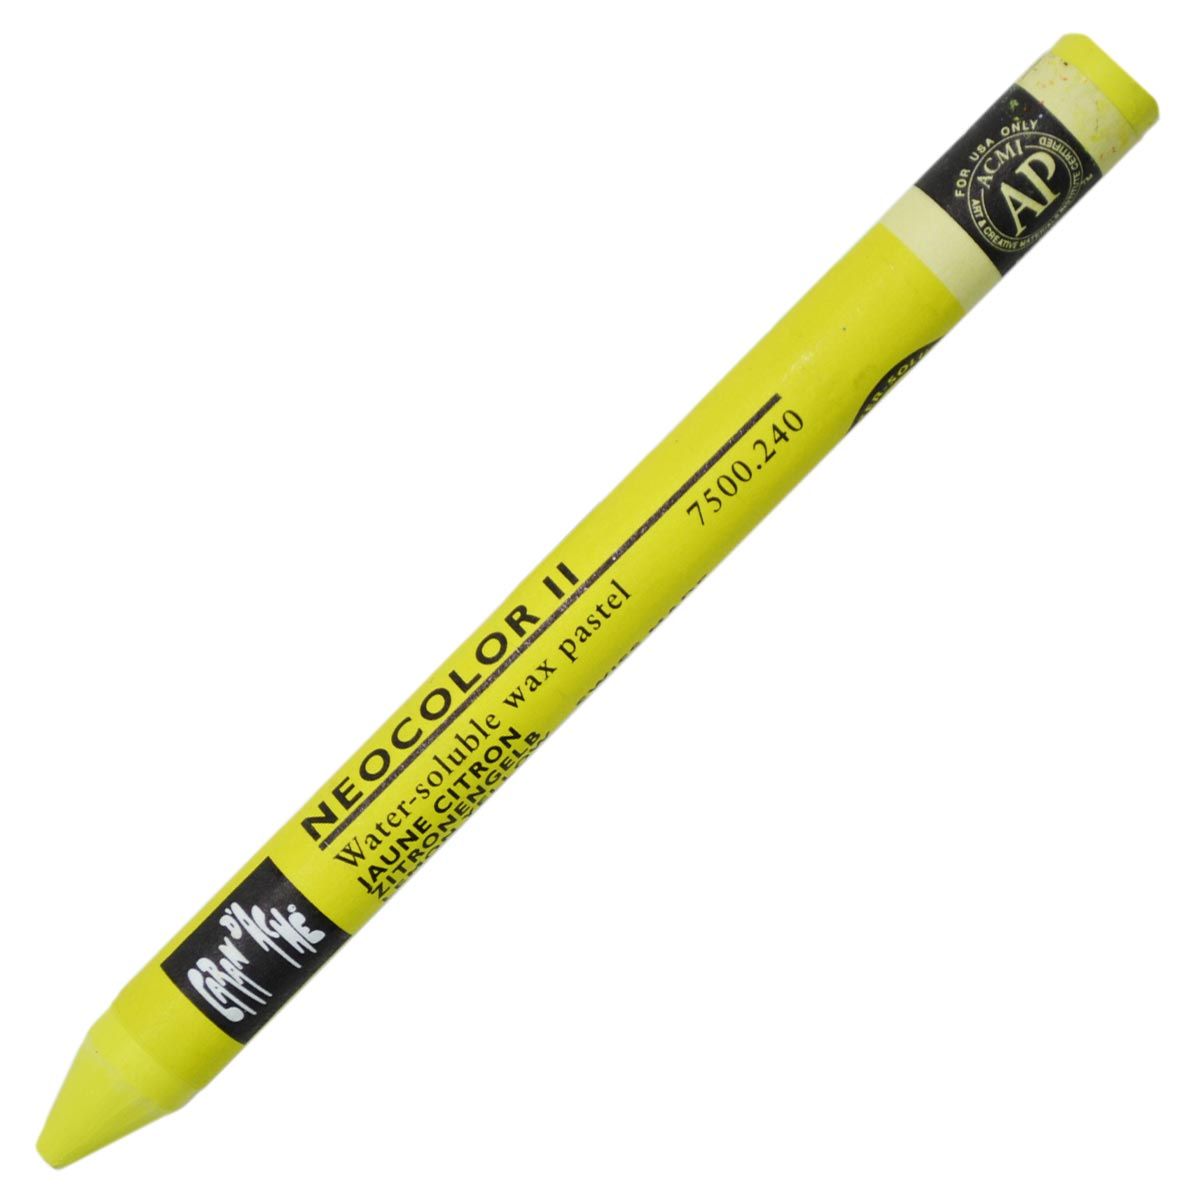 Neocolor II Aquarelle Artists’ Crayon - Lemon Yellow 240